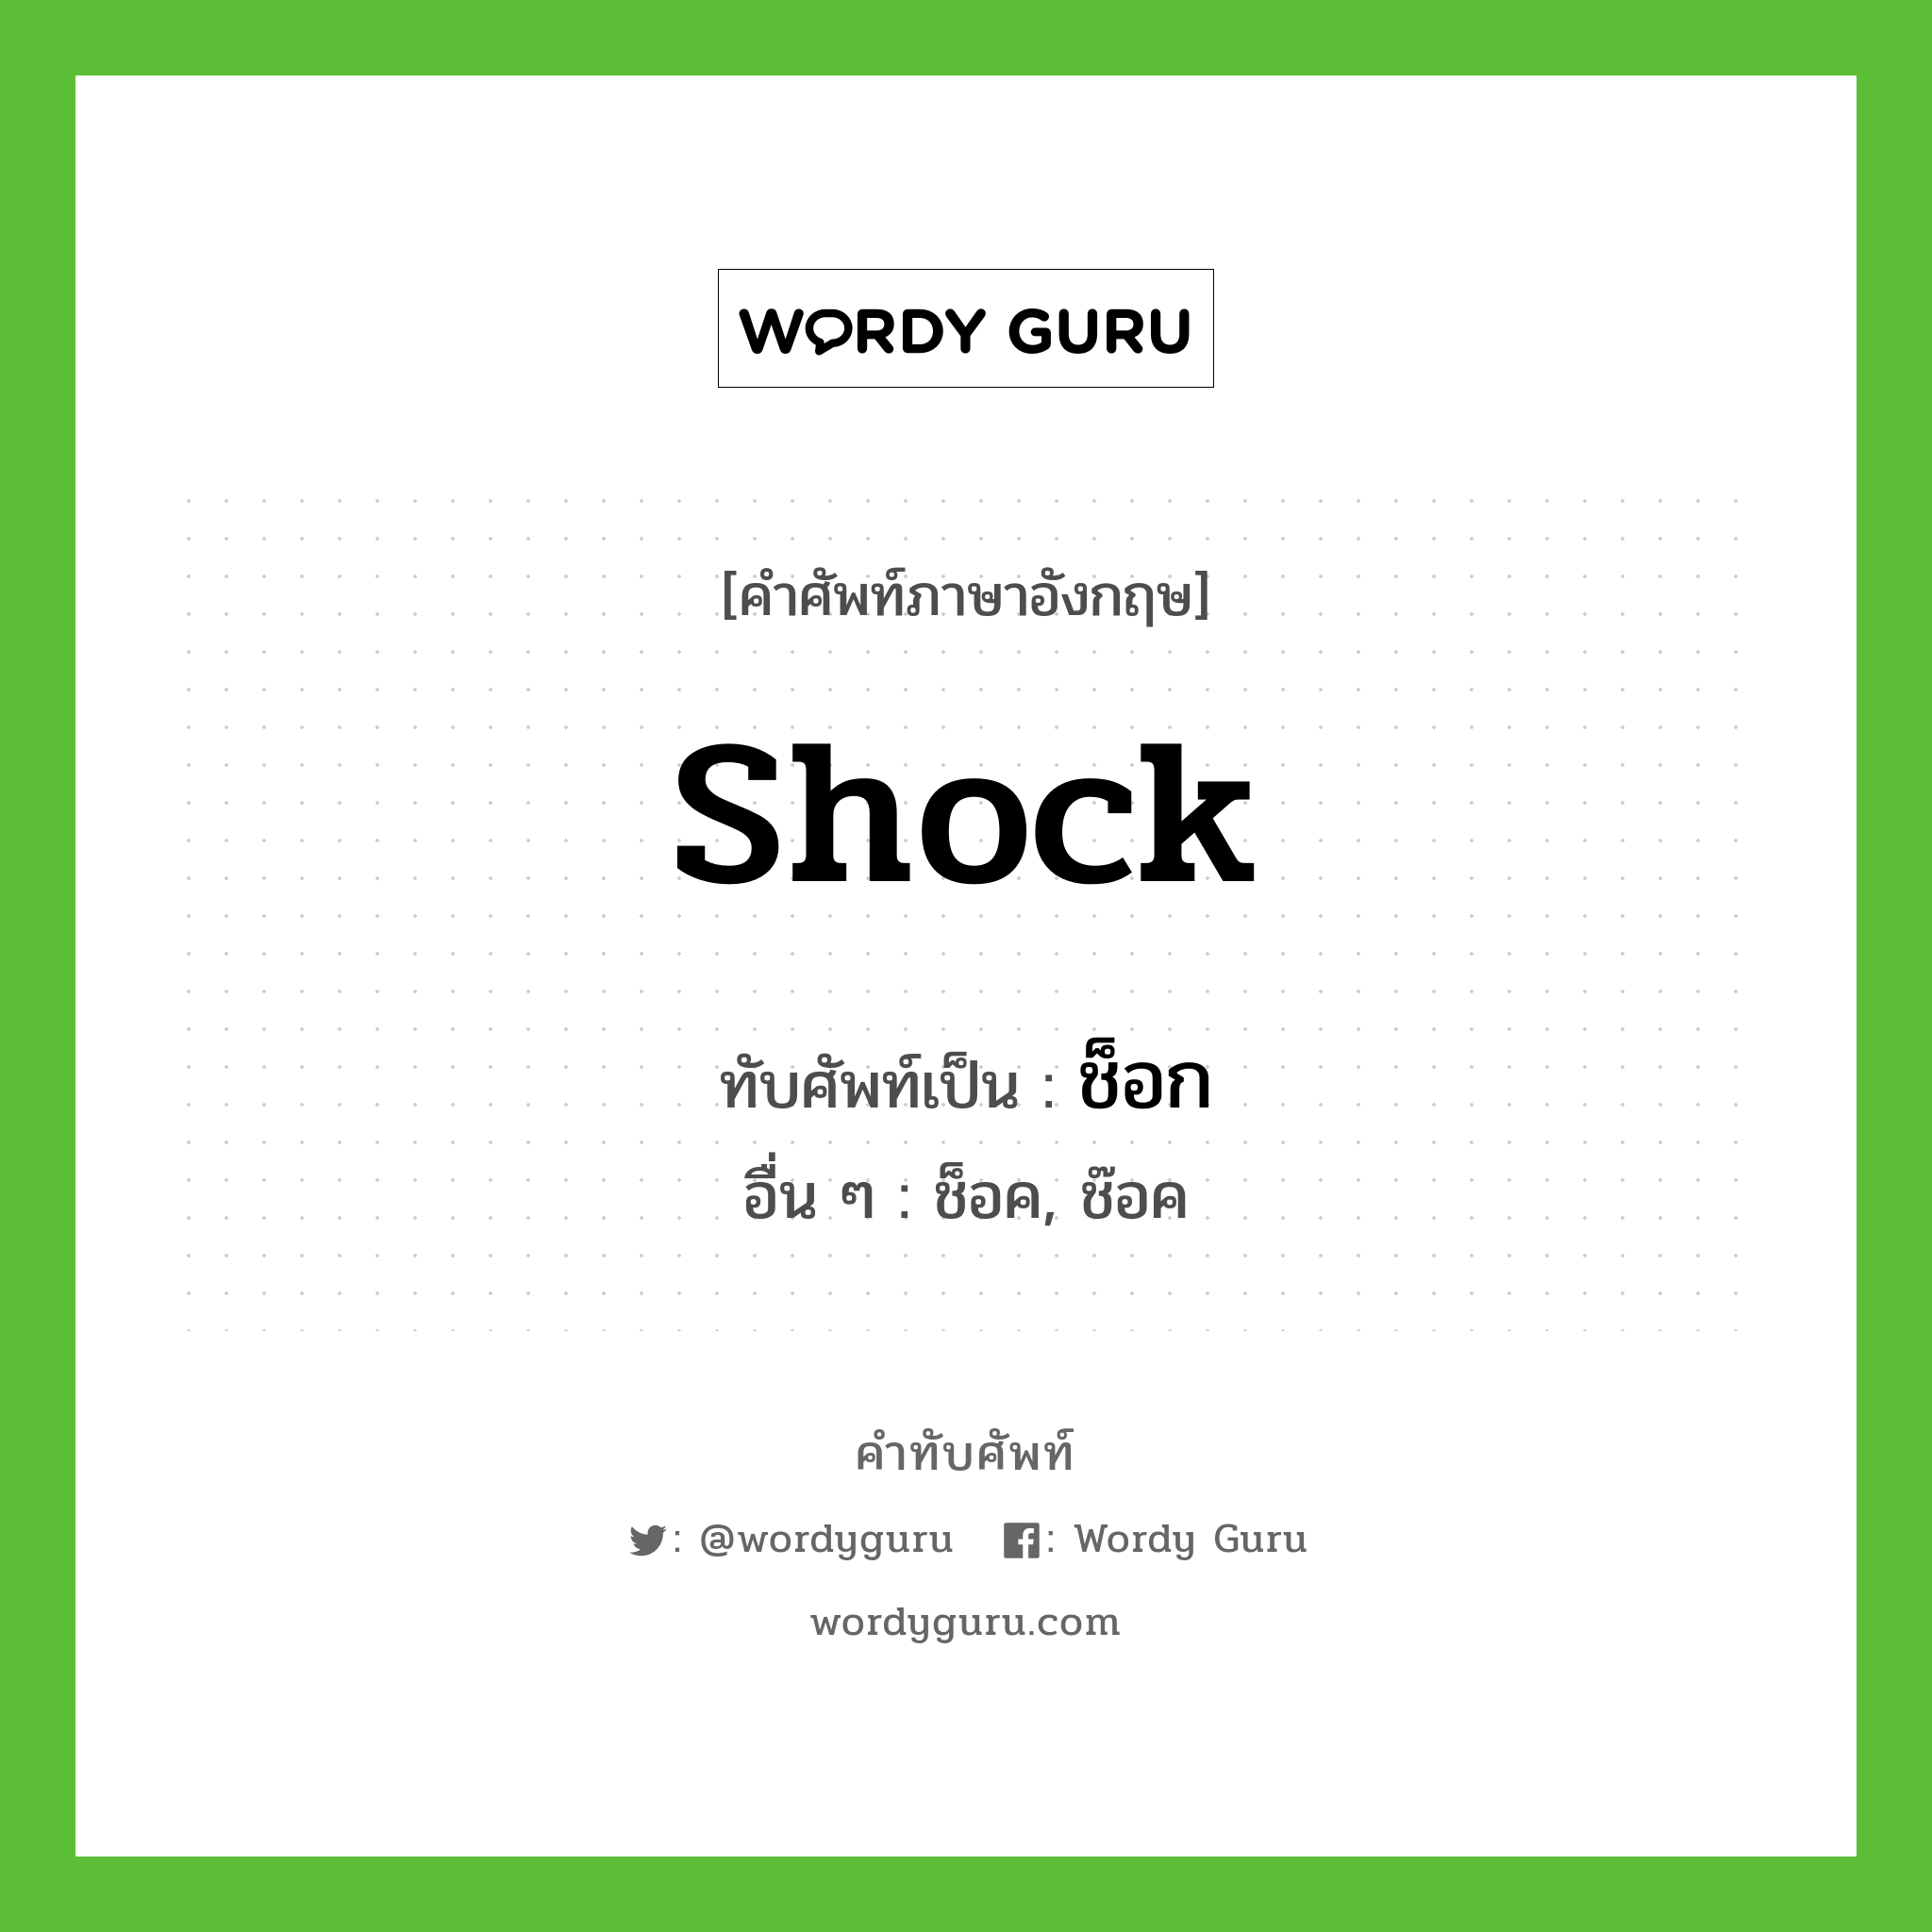 shock เขียนเป็นคำไทยว่าอะไร?, คำศัพท์ภาษาอังกฤษ shock ทับศัพท์เป็น ช็อก อื่น ๆ ช็อค, ช๊อค